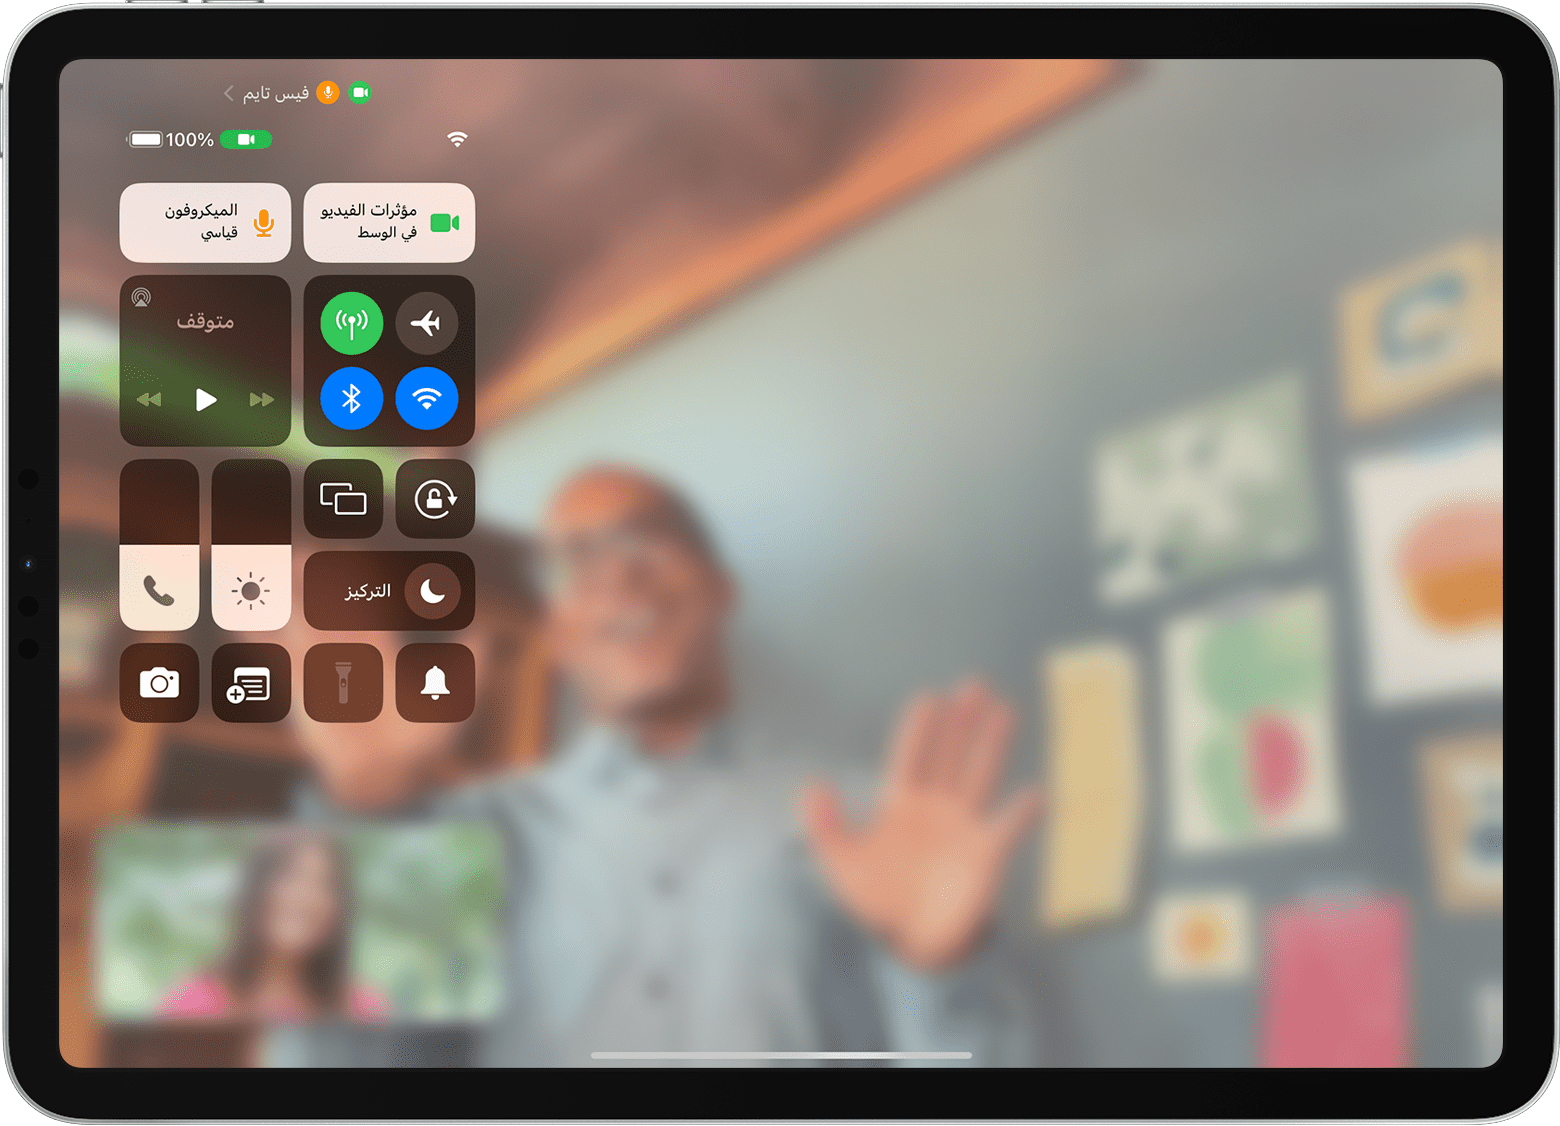 شاشة iPad تعرض مكالمة فيس تايم مع ظهور "مركز التحكم"، بما في ذلك زر "تأثيرات الفيديو"